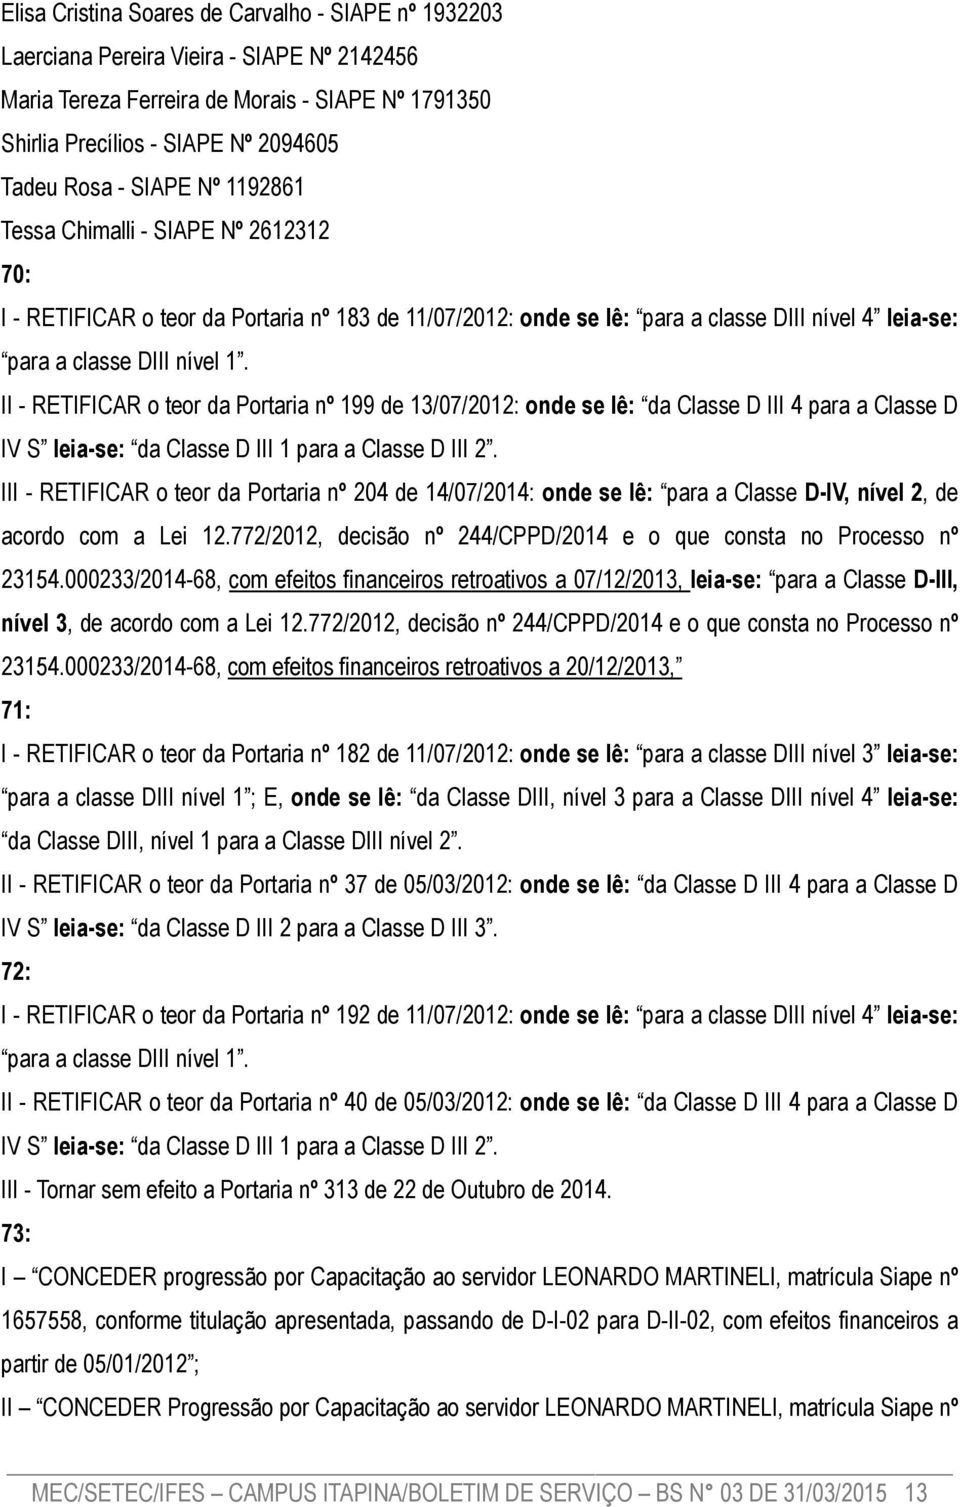 II - RETIFICAR o teor da Portaria nº 199 de 13/07/2012: onde se lê: da Classe D III 4 para a Classe D IV S leia-se: da Classe D III 1 para a Classe D III 2.